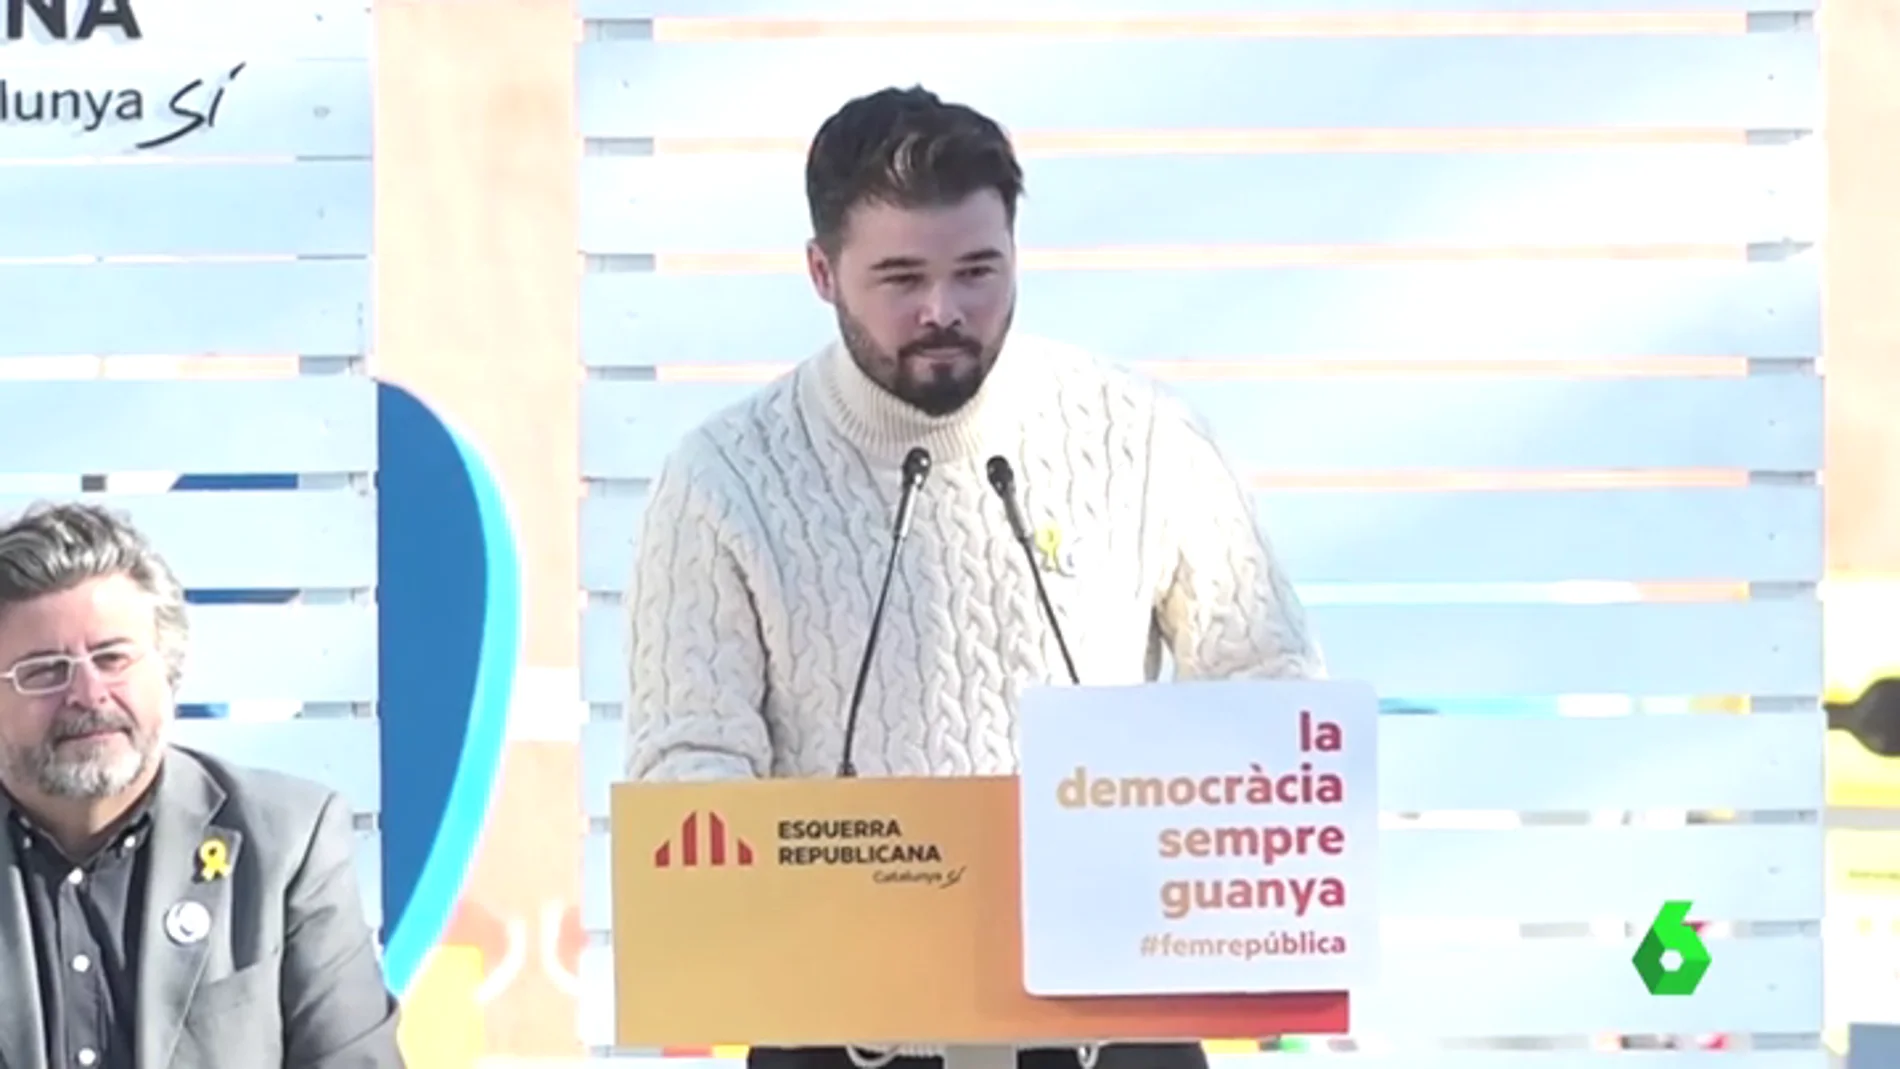 Gabriel Rufián: "Josep Borrell hablaba de desinfectar Cataluña, pues el mejor desinfectante es la cal viva"